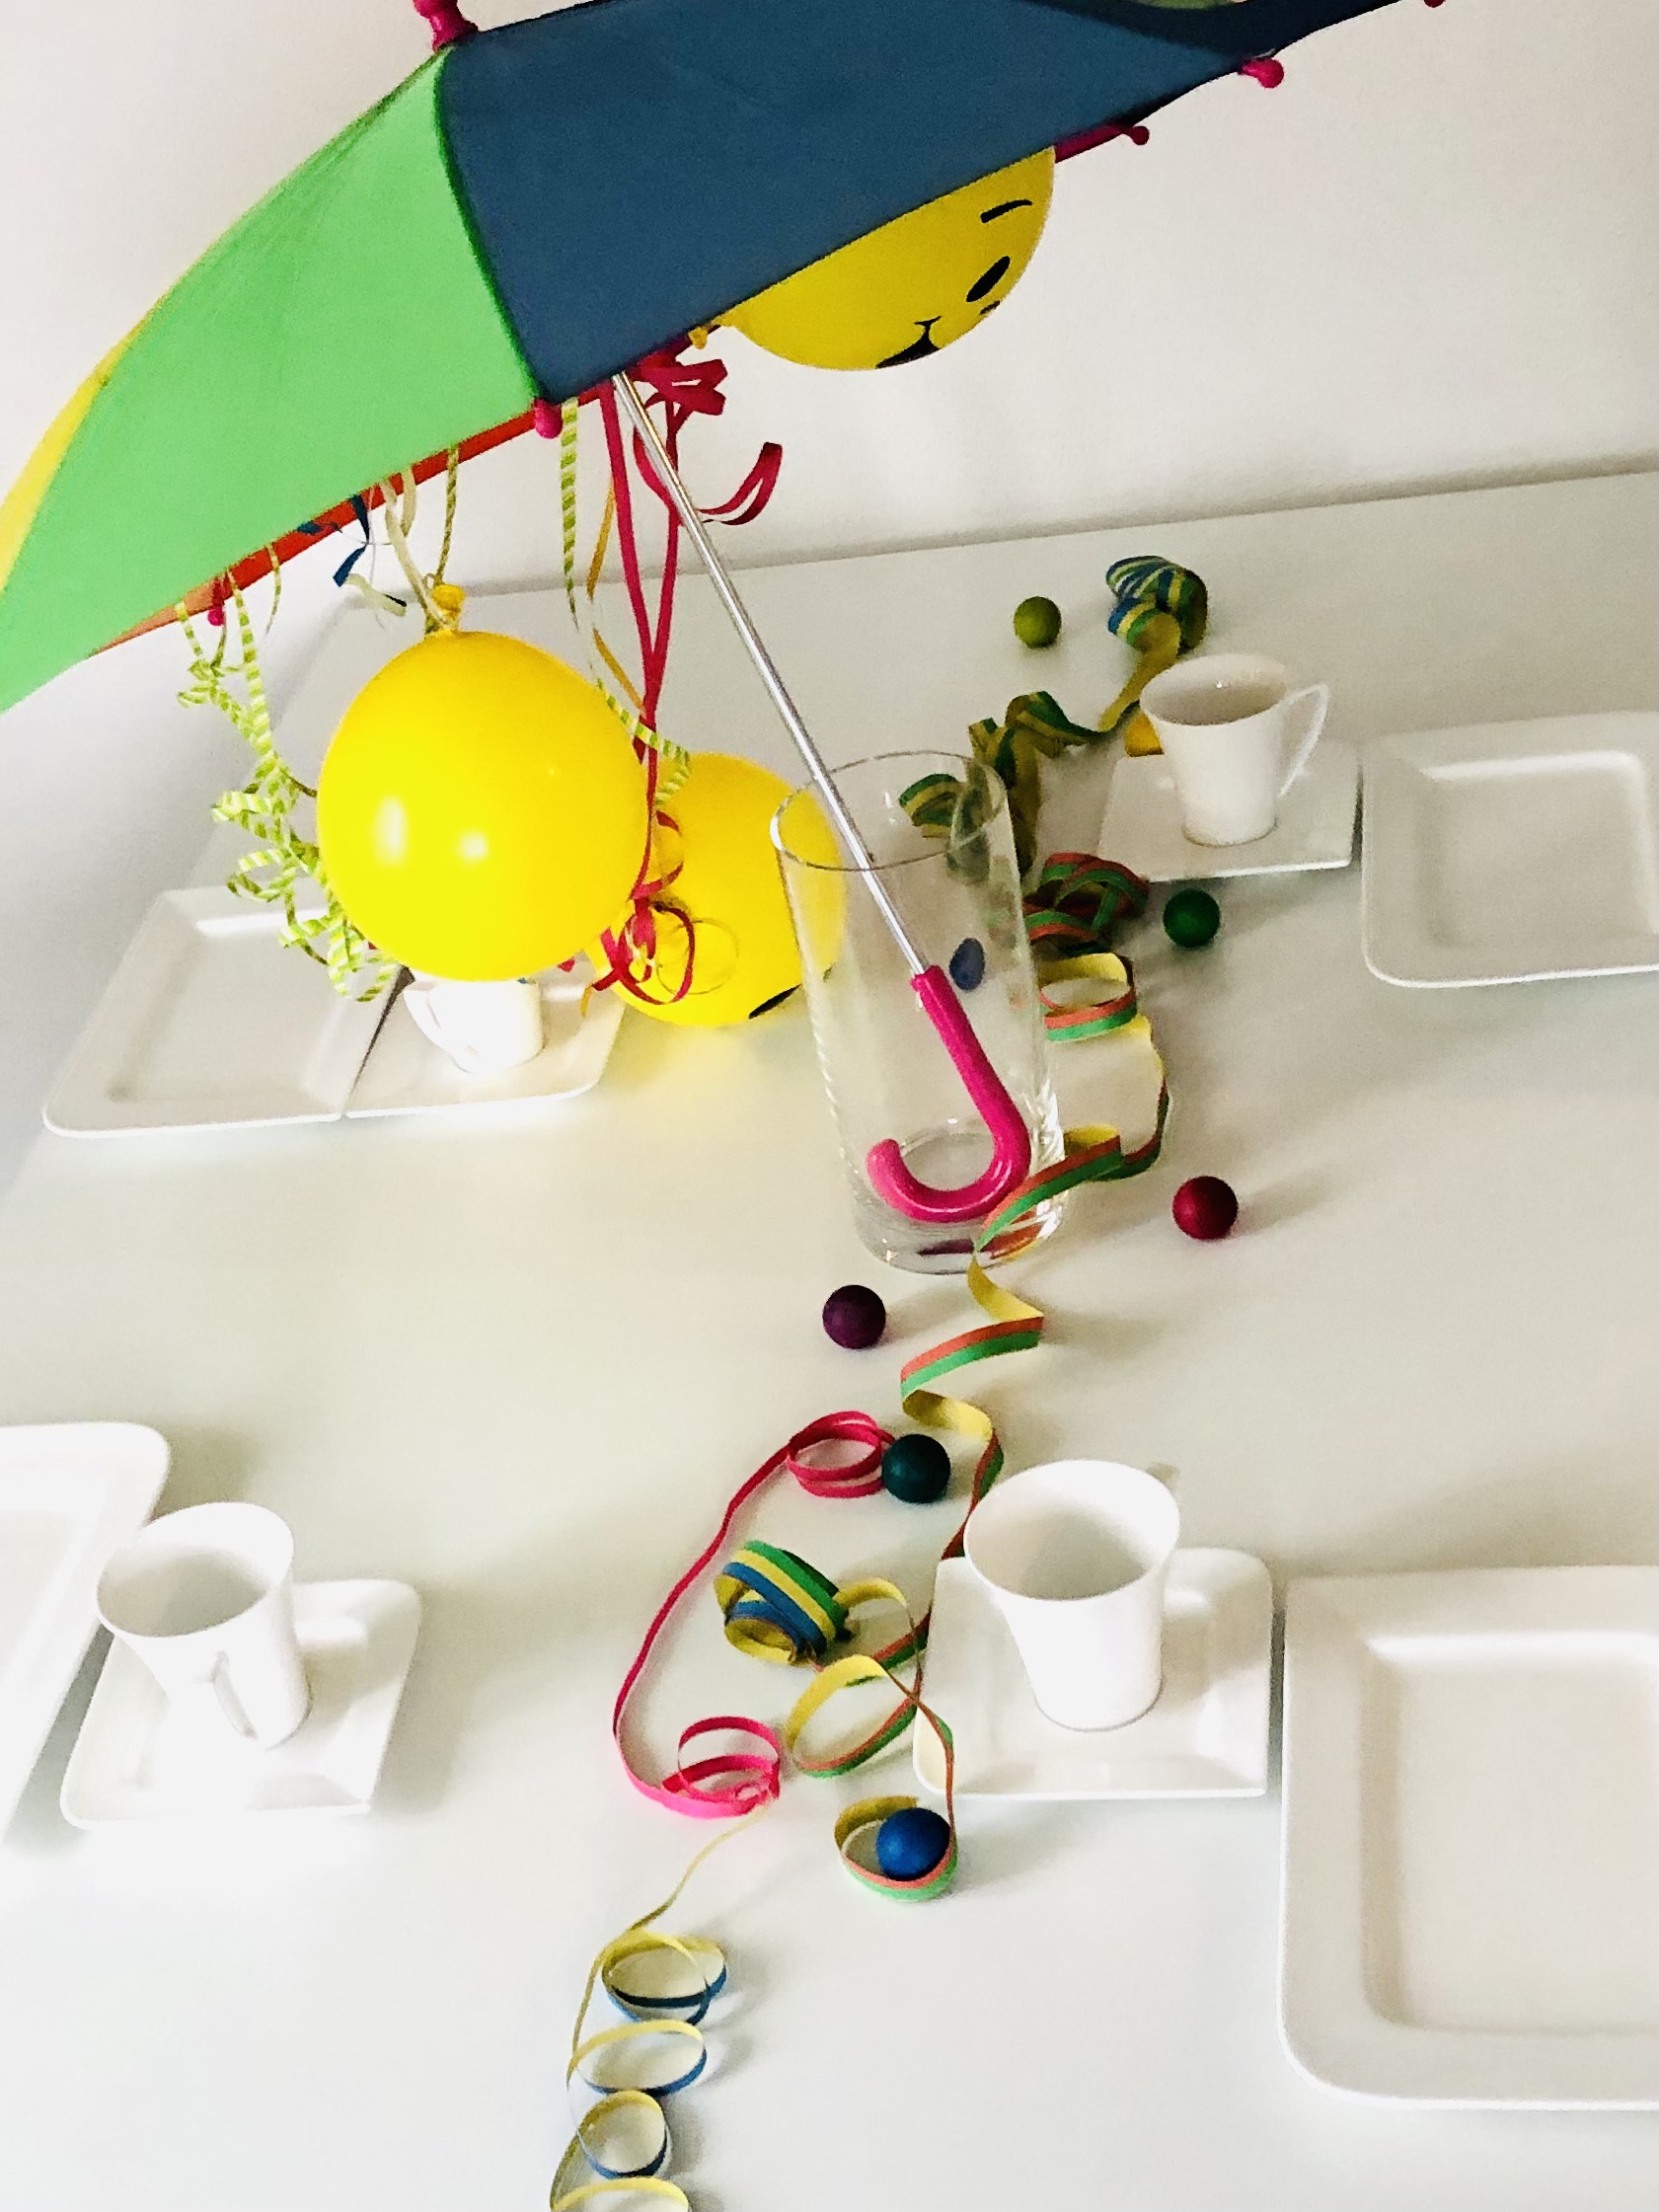 Bild zum Schritt 6 für das Bastel- und DIY-Abenteuer für Kinder: 'Nach dem Spielen stellt den Regenschirm in eine große Vase...'